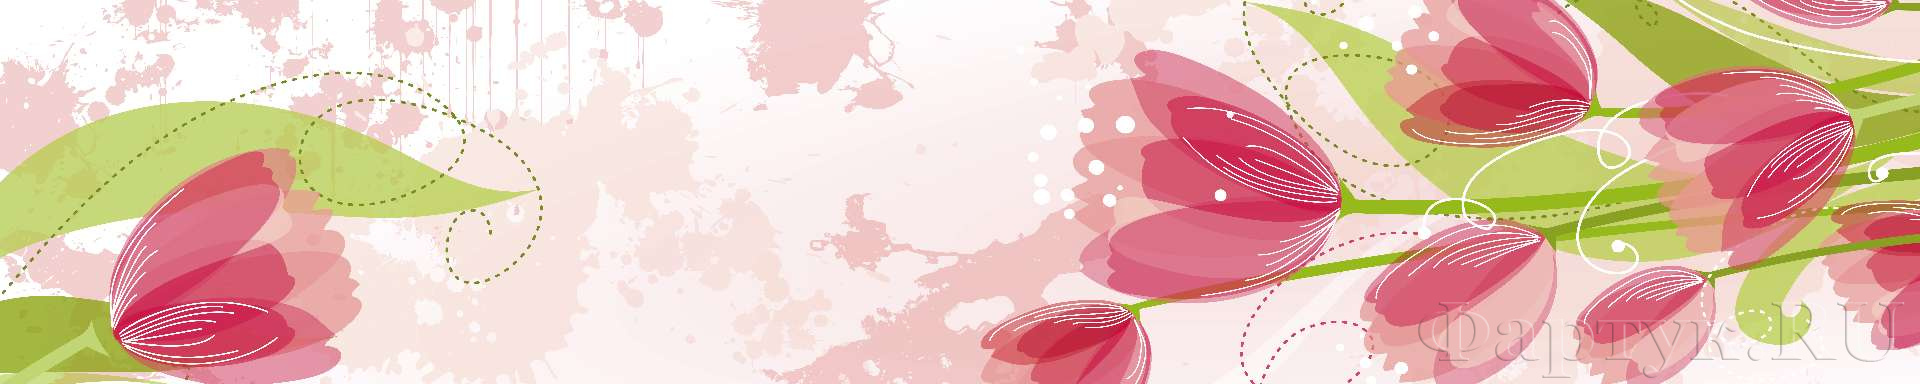 Нарисованные розовые тюльпаны